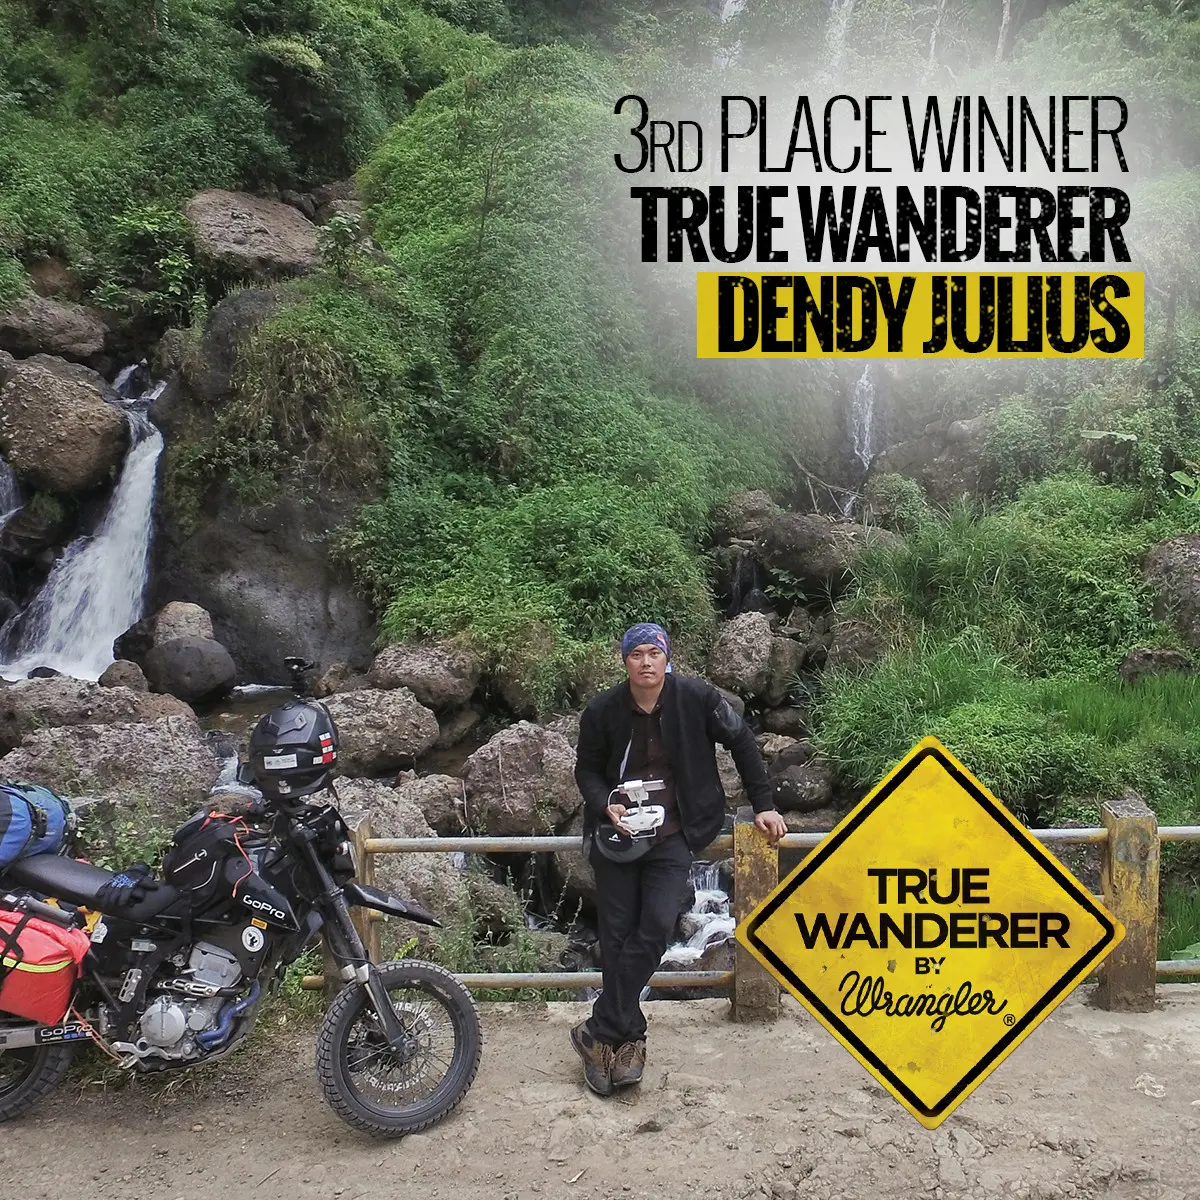 Dendy Julius menjadi pemenang pertama dari kompetisi Wrangler True Wanderer 2017 yang diadakan oleh Wrangler.